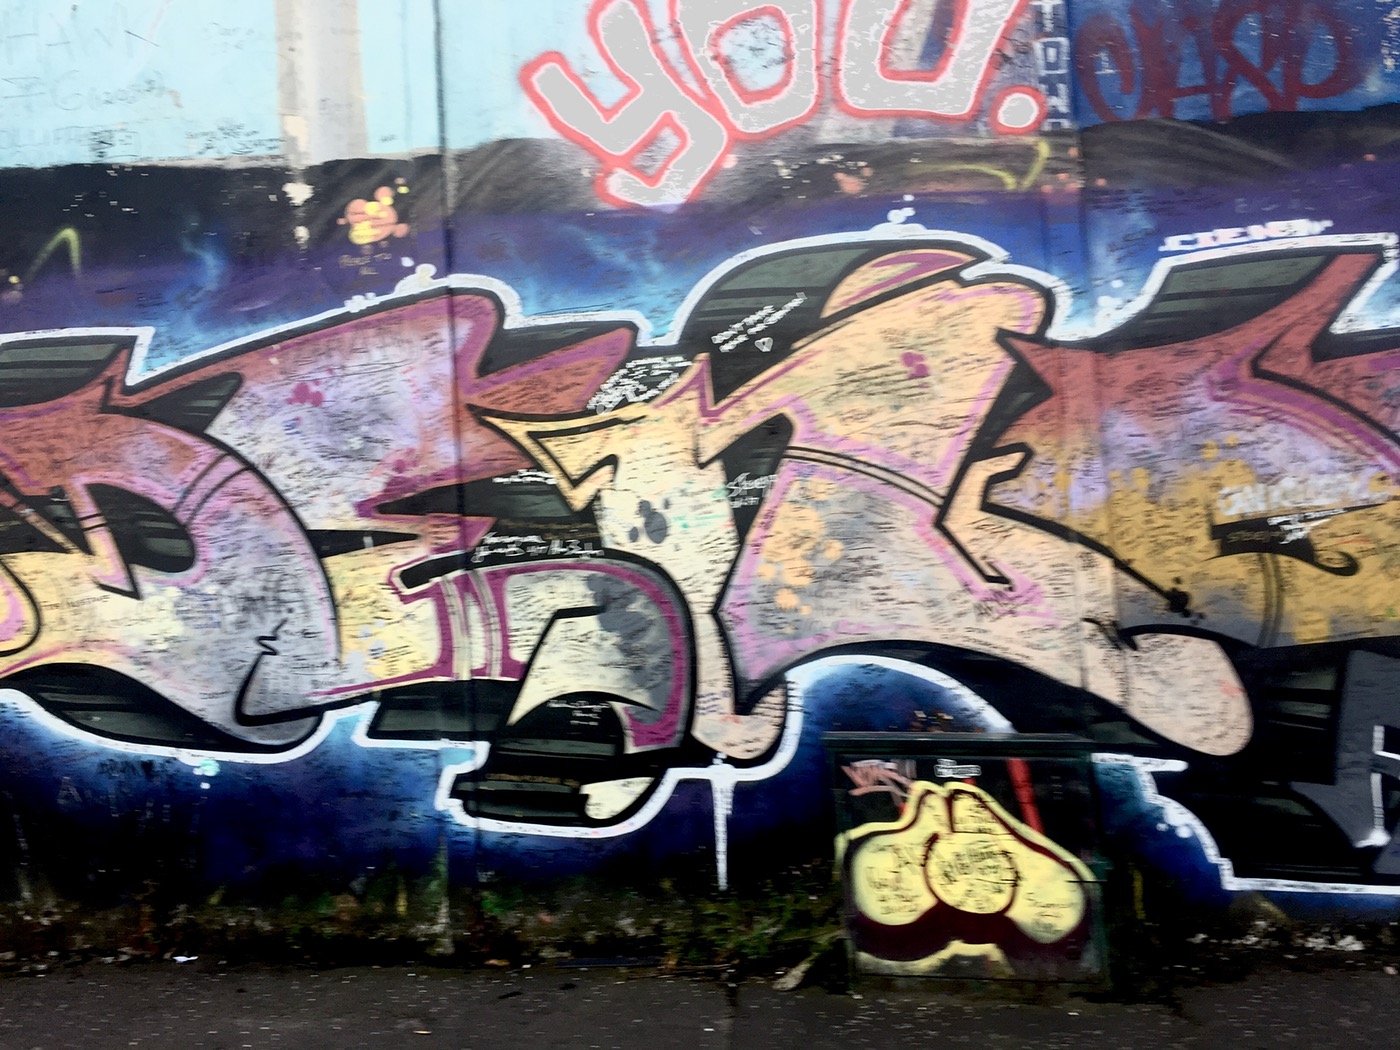 Graffiti Urban decay art graphics design cityscape